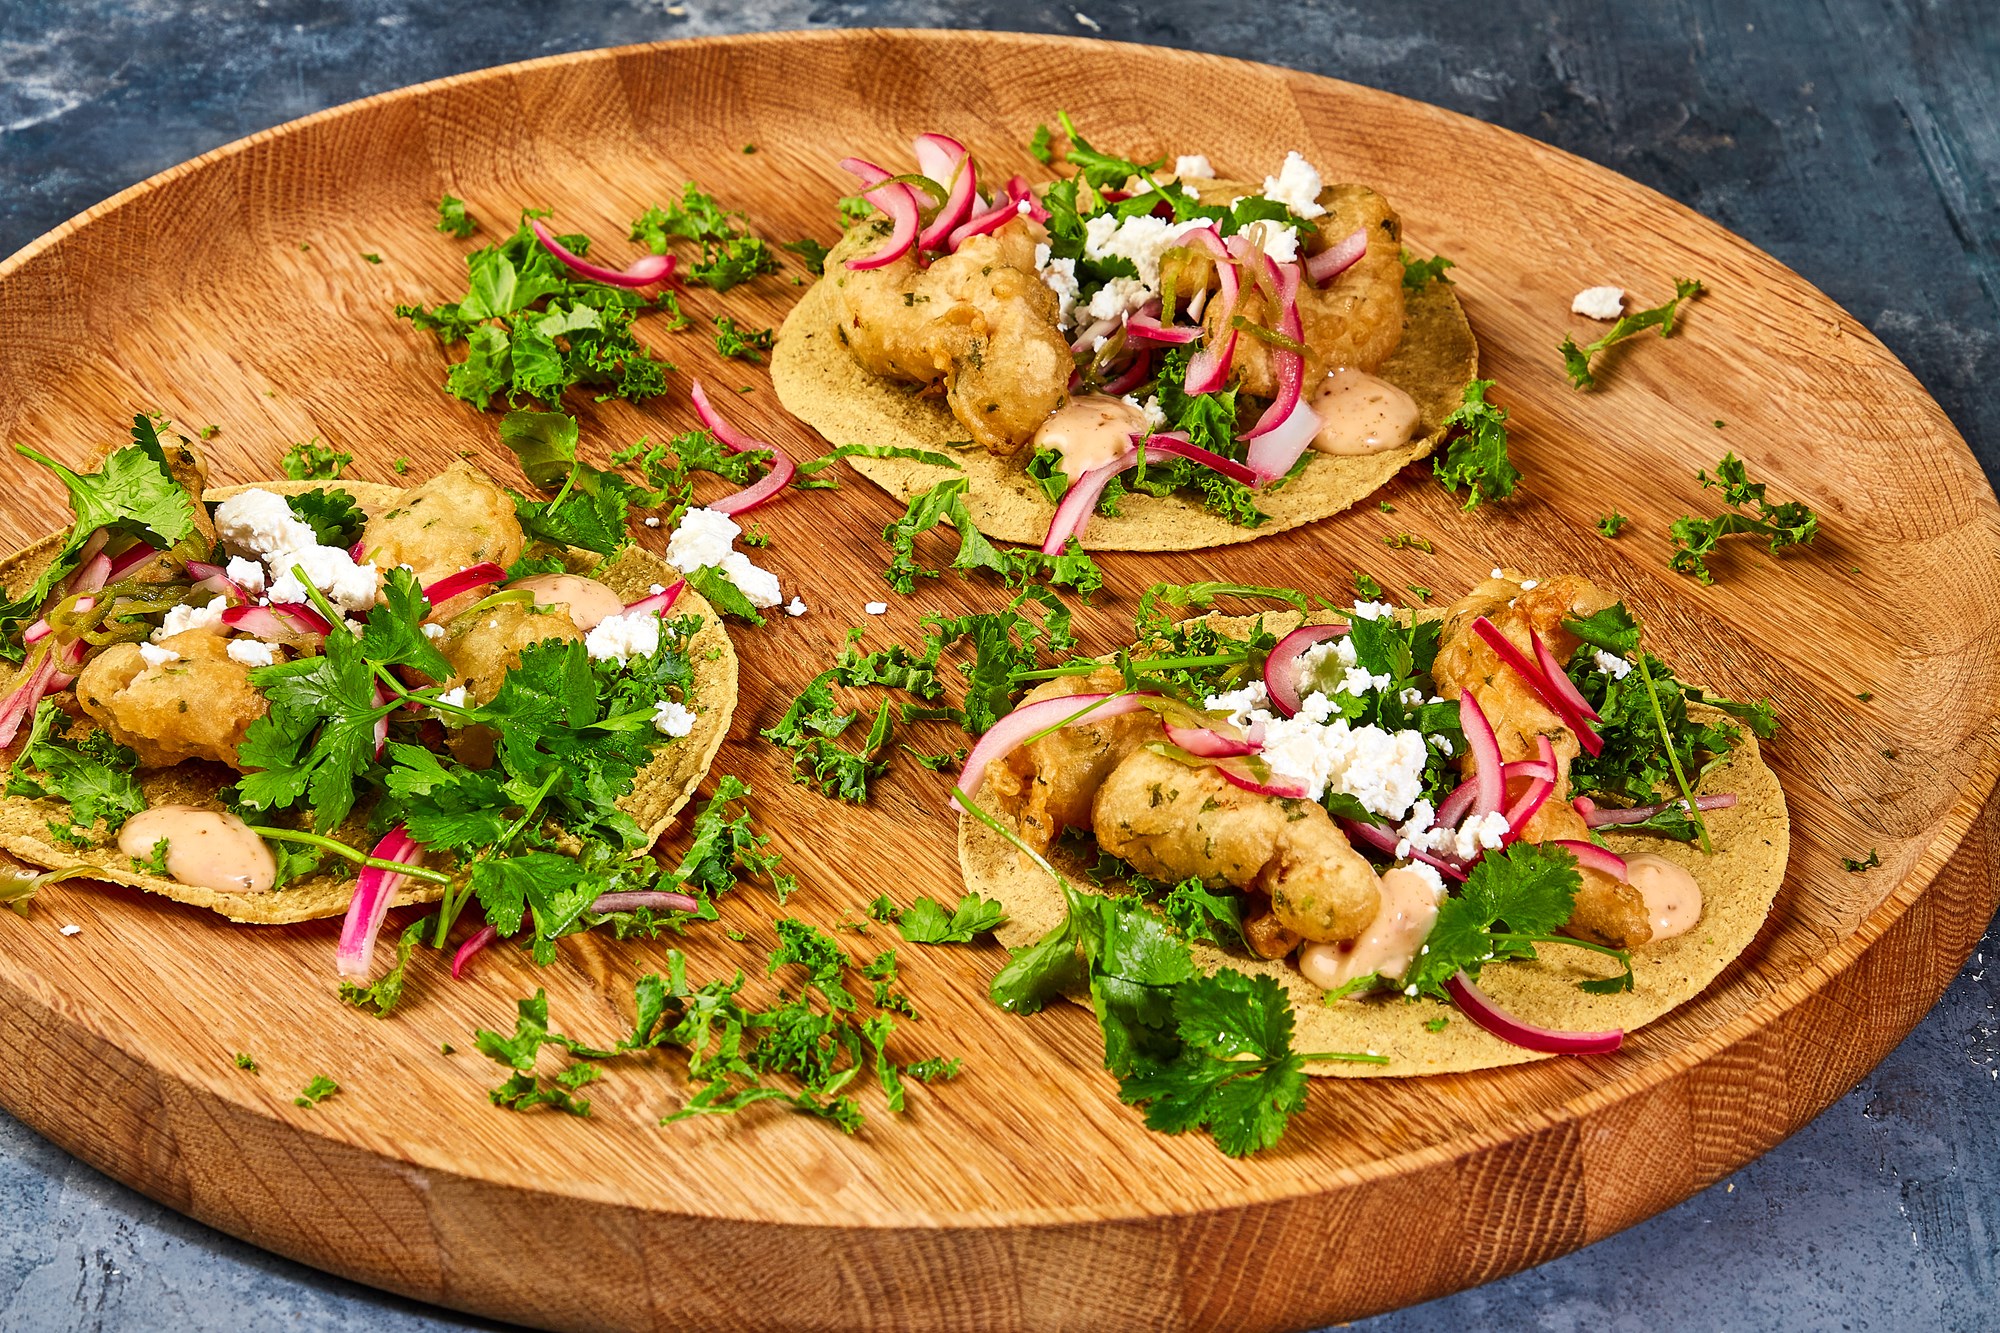 Baja style fish tacos med sprødstegt torsk, grønkål, queso fresco, chilisyltede rødløg, koriander og mexicansk kryddermayo